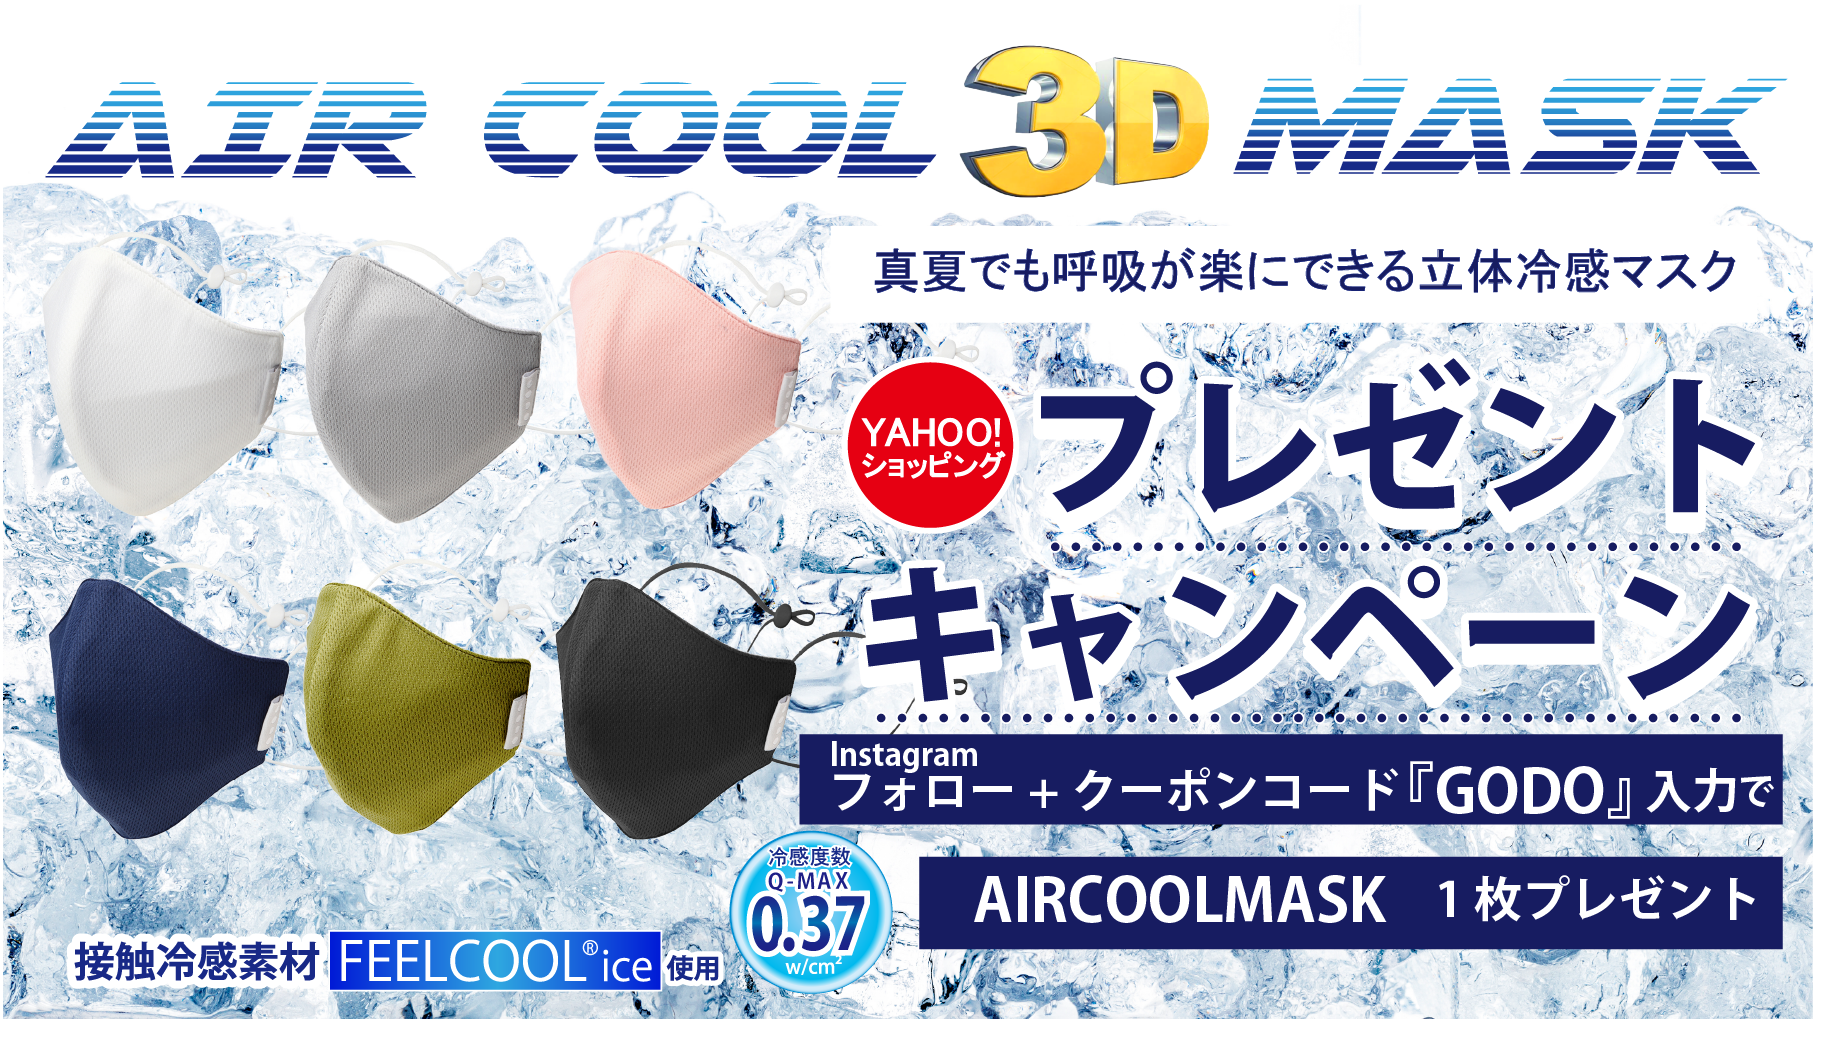 真夏でも呼吸が楽にできる立体冷感マスク
『AIR COOL MASK』プレゼントキャンペーンを7月2日から実施！
～冷感度数Q-MAX値0.37 FEELCOOL(R) ice使用～